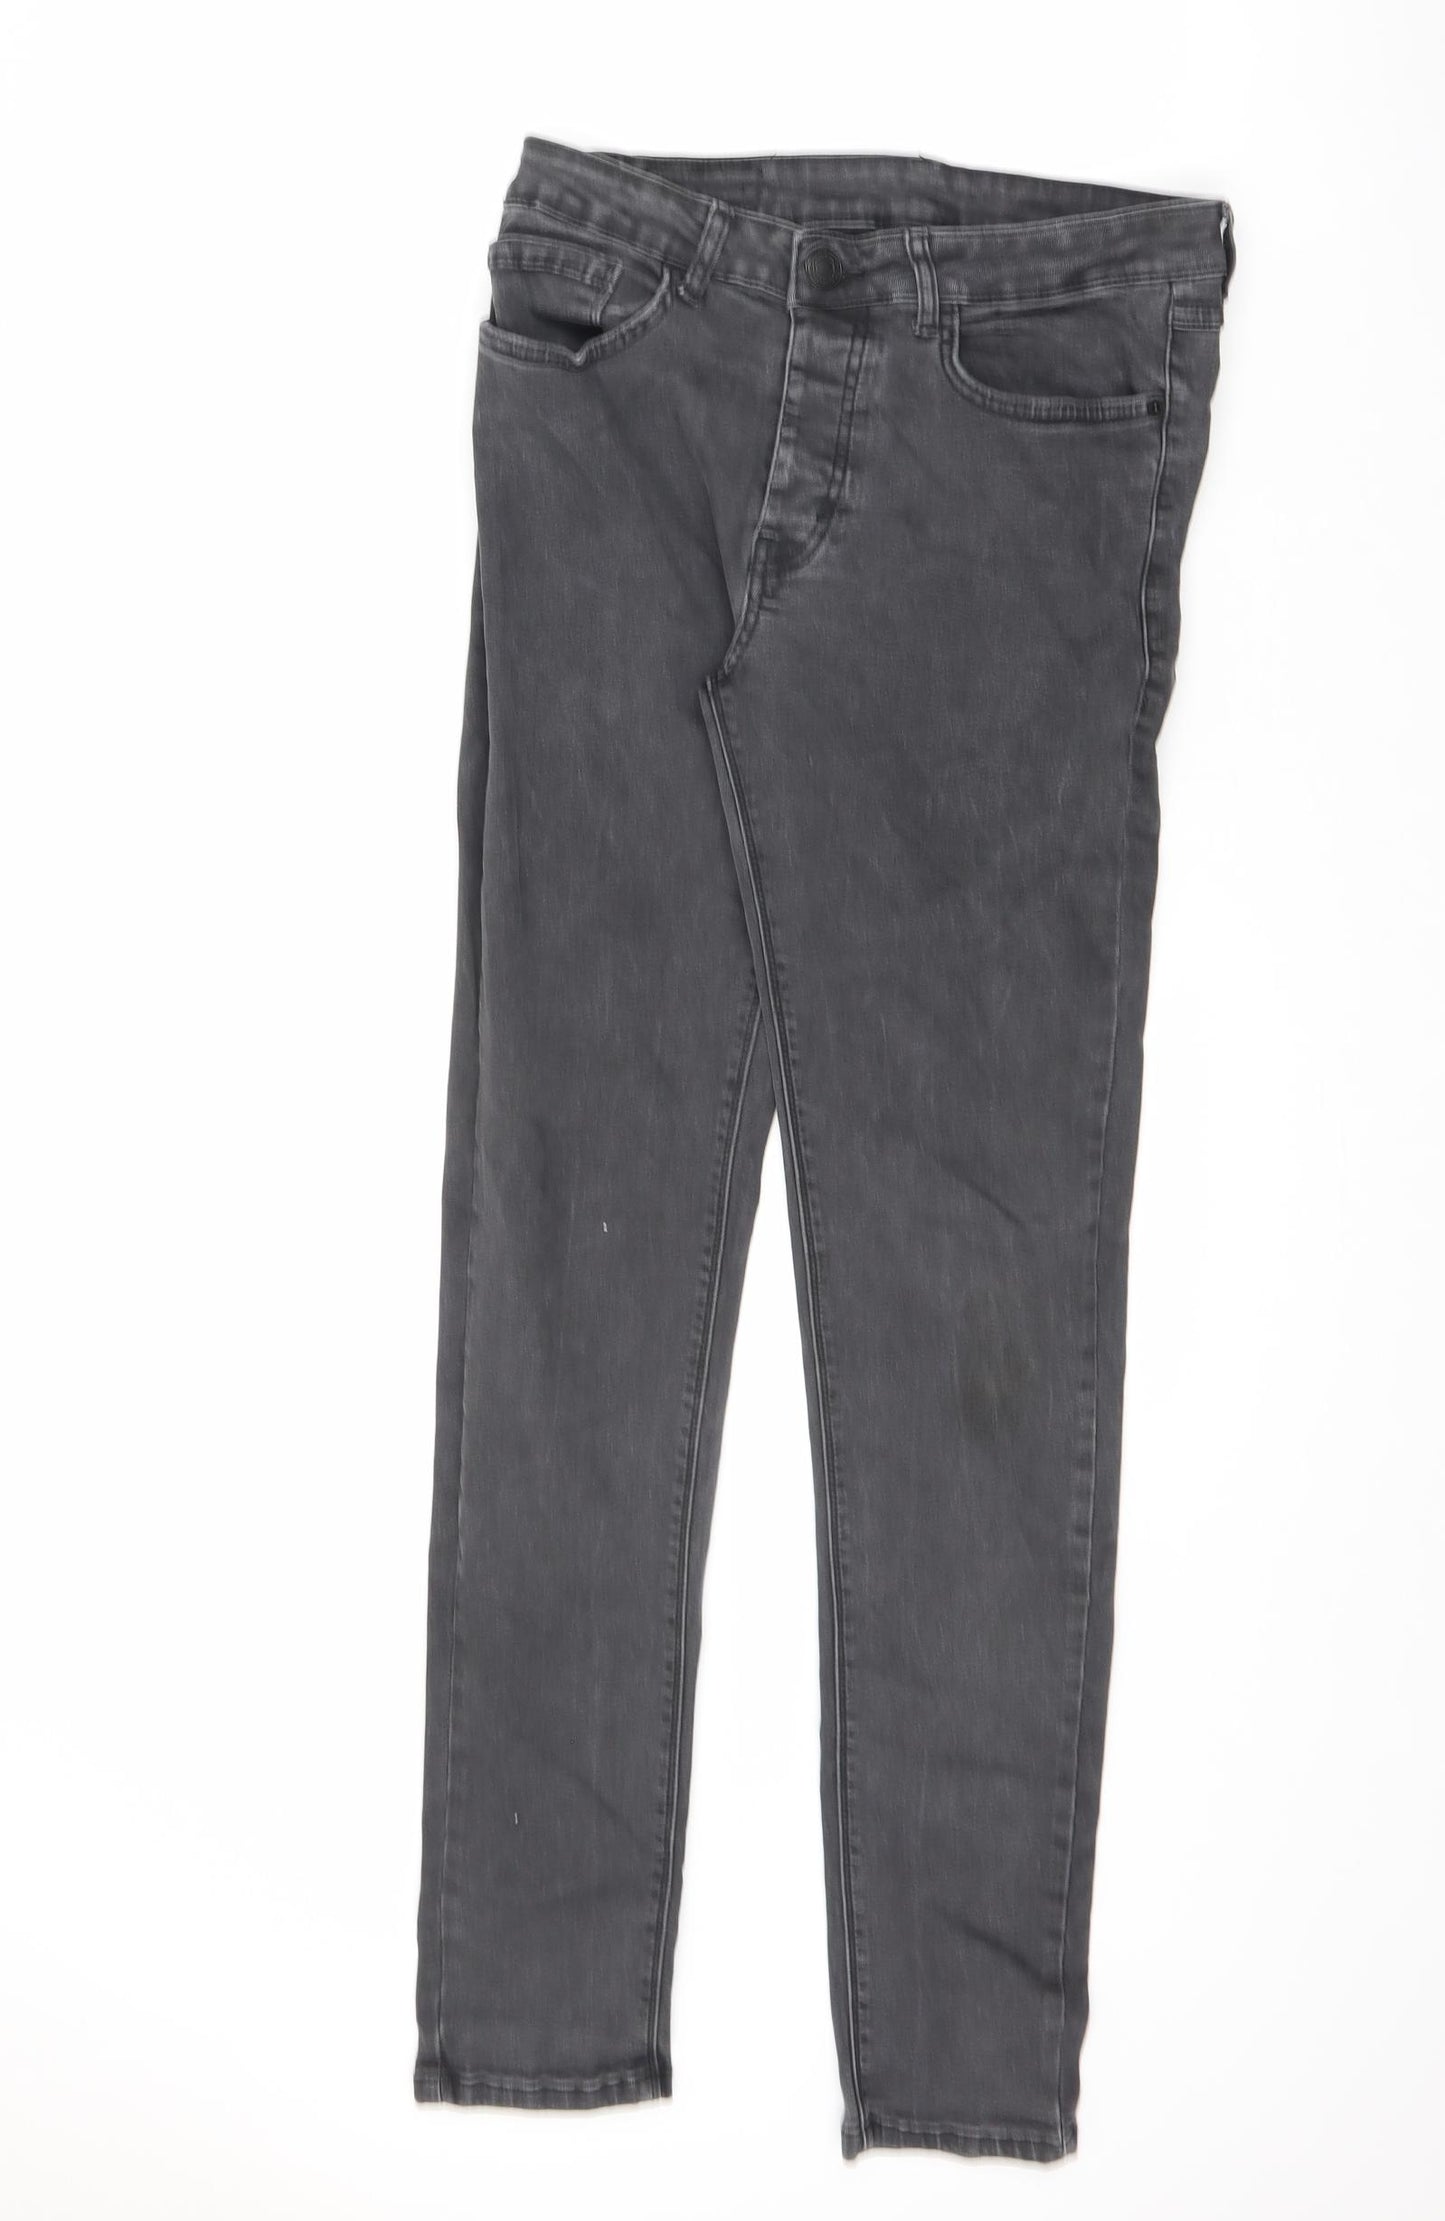 Denim & Co. Mens Grey Cotton Skinny Jeans Size 30 in L32 in Regular Zip